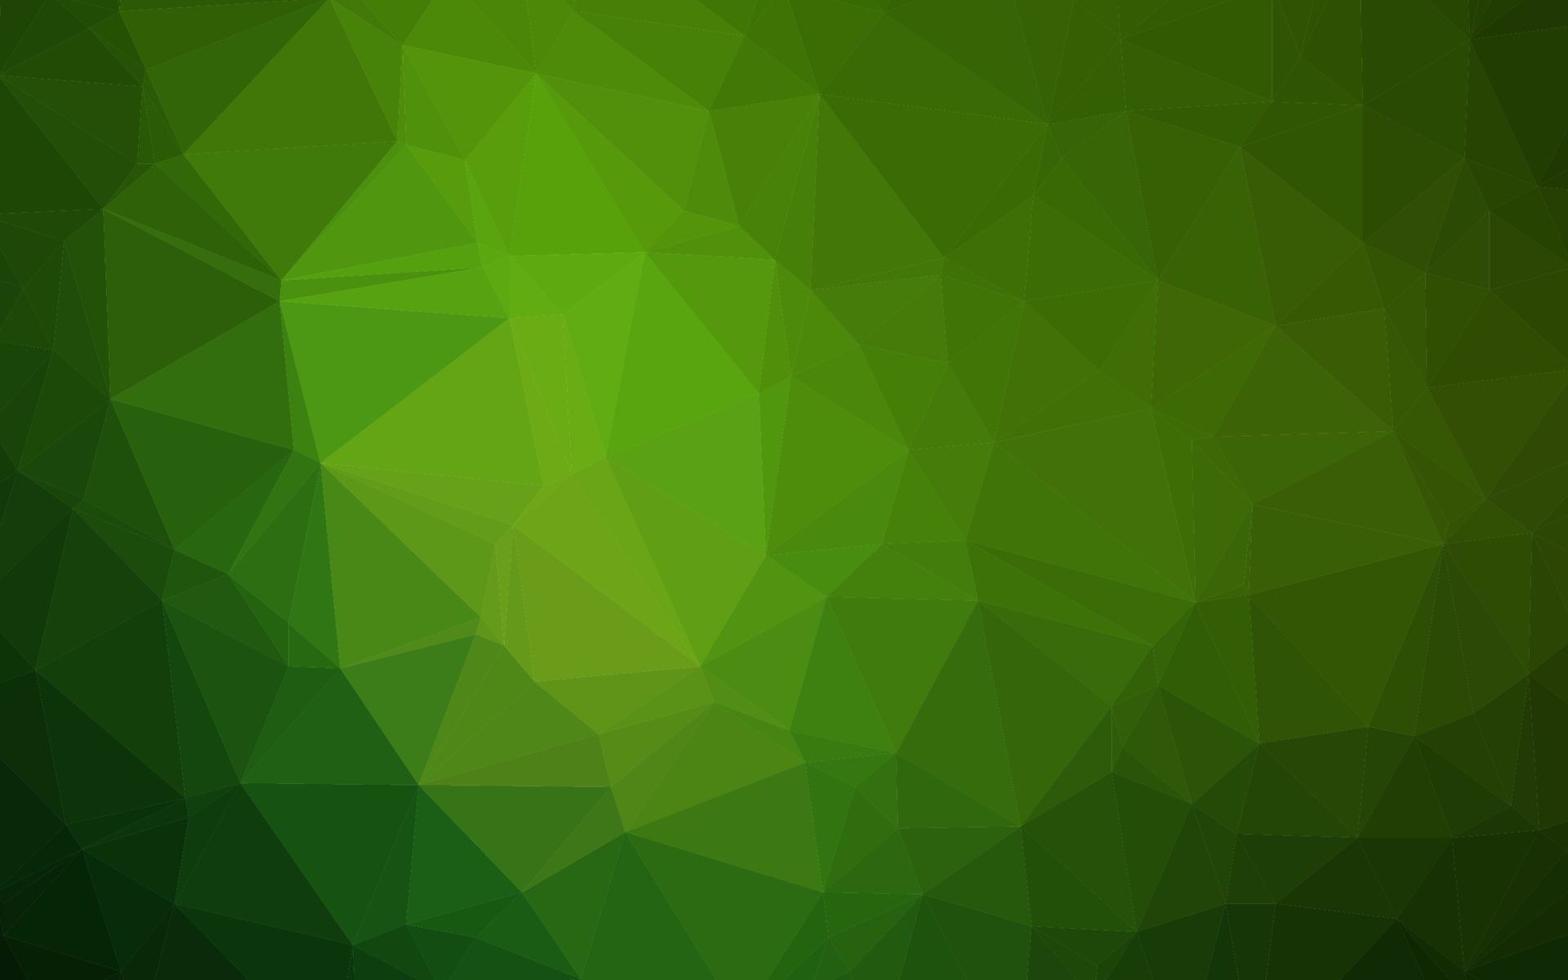 textura poligonal abstrata de vetor verde claro.